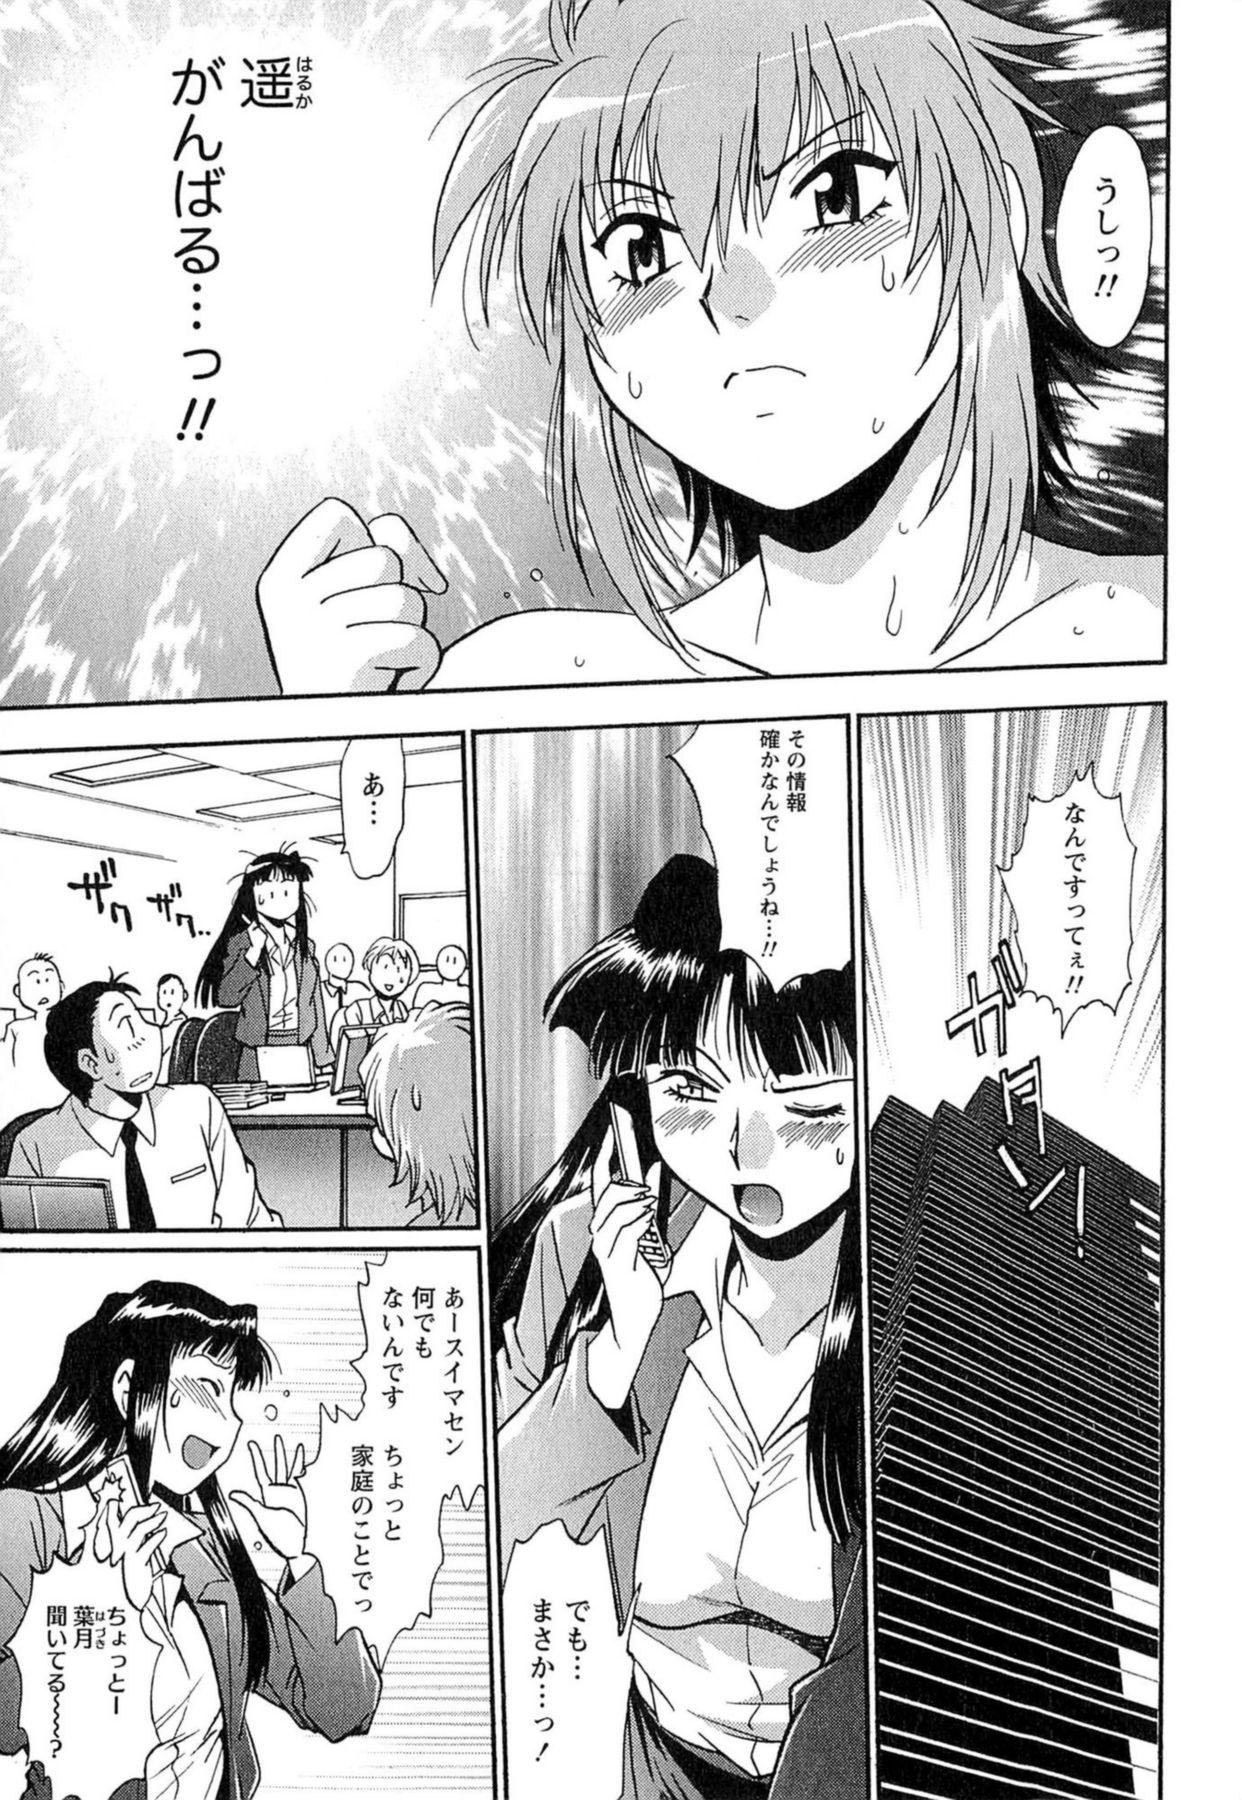 Magrinha Kuikomi wo Naoshiteru Hima wa Nai! Vol. 1 Jockstrap - Page 8